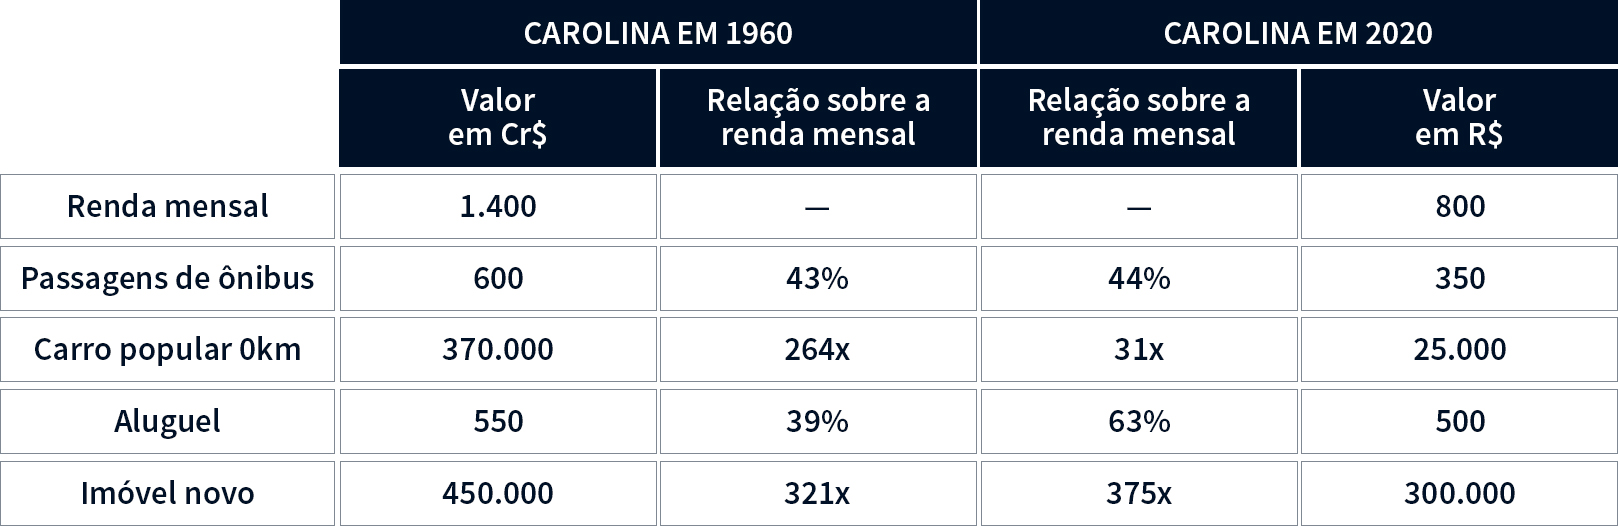 Gráfico comparativo da realidade da Carolina em 1960 com uma projeção do mesmo perfil de renda em 2020. Onde é possível comparar a pobreza urbana dos dois períodos.